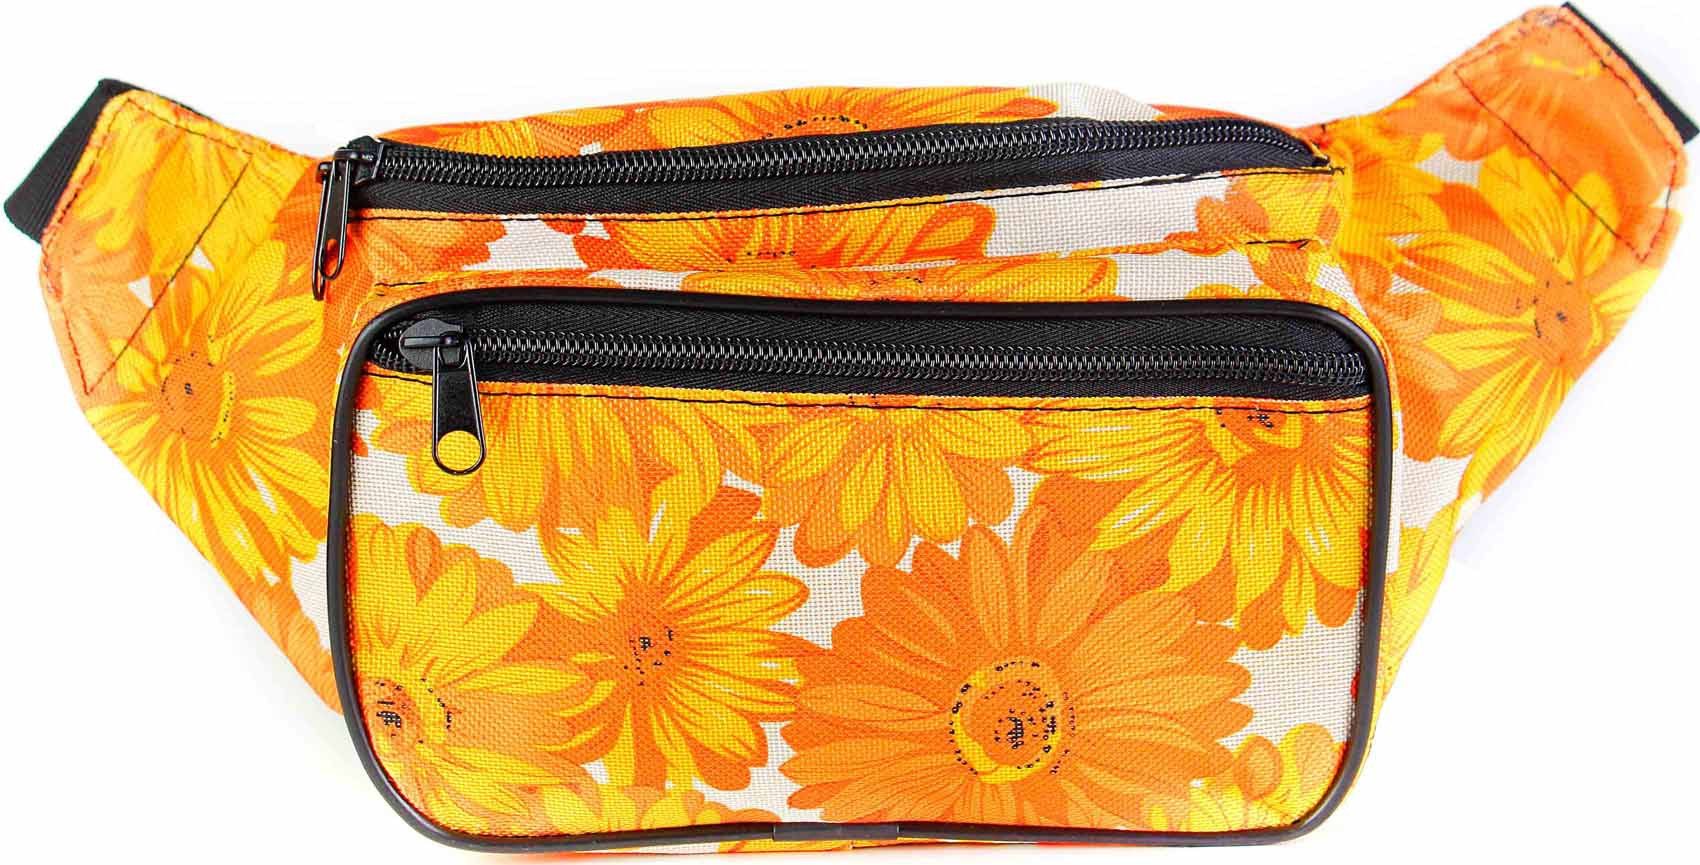 Sunflower floral Fanny Pack, Yellow Black Flower Pattern Boho Women Waist  Bag, Designer Bum Bag, Small Large Belt Hip Shoulder Bag